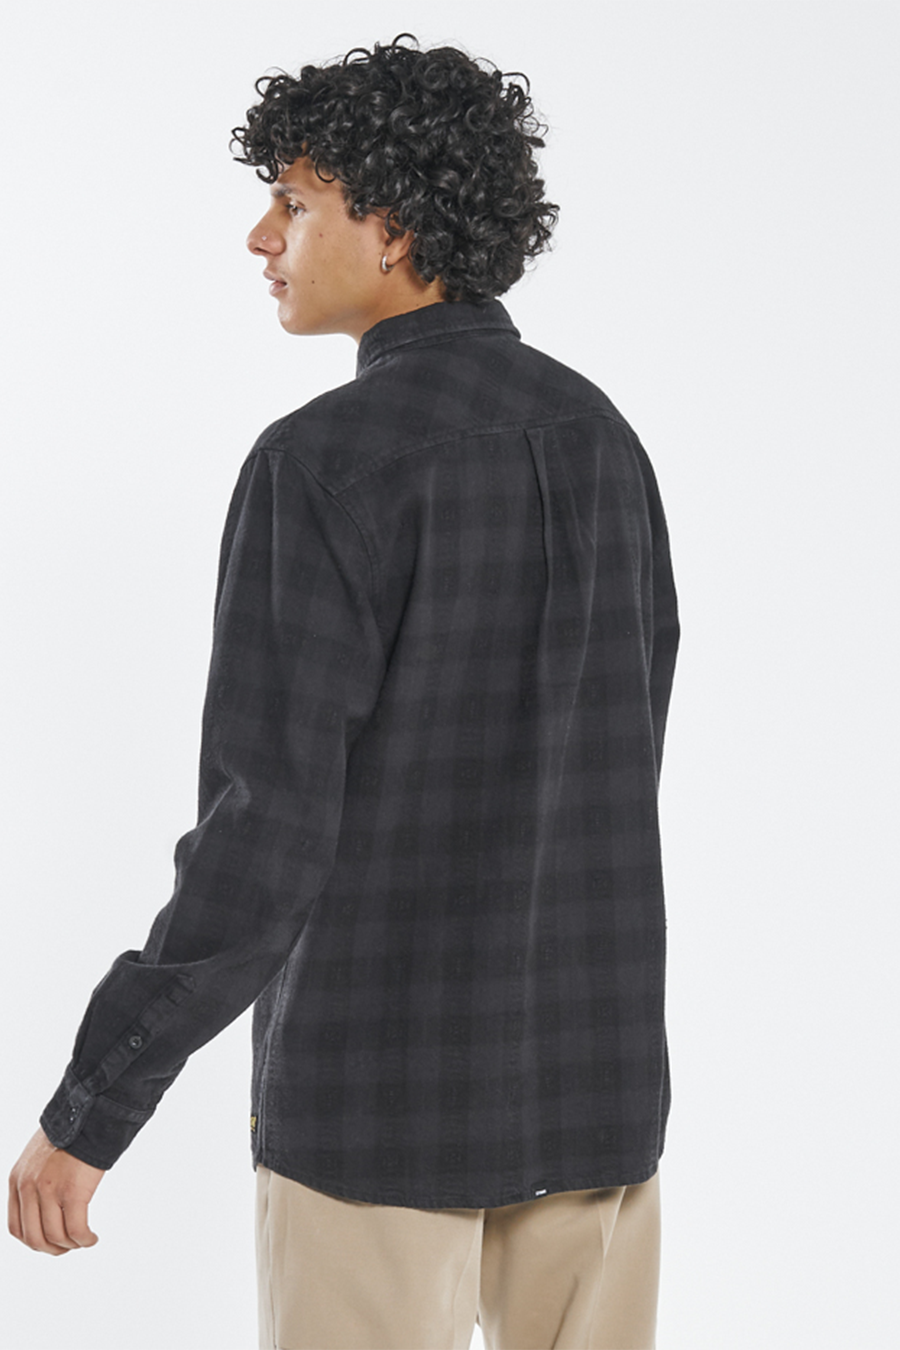 Liste Flannel | Black - Main Image Number 2 of 3